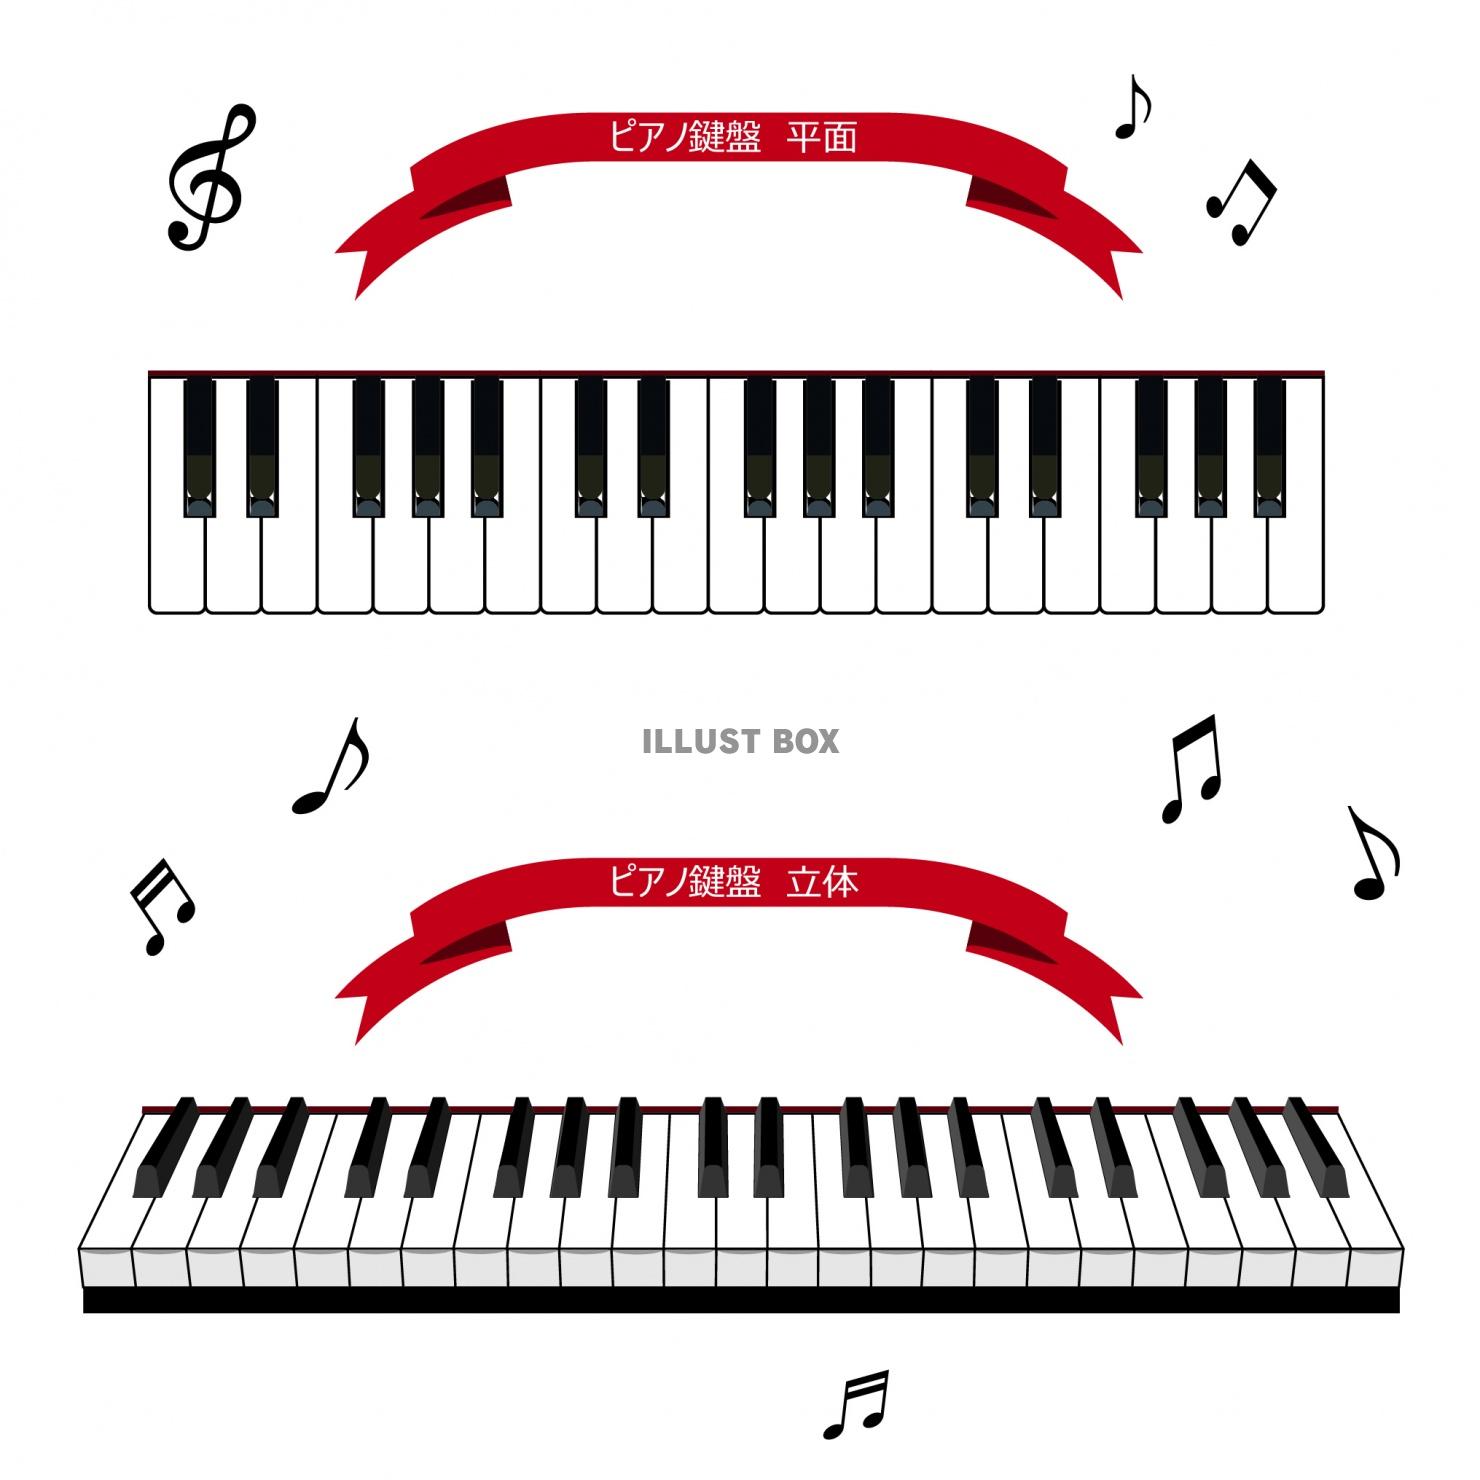 無料イラスト ピアノ鍵盤 平面 立体イラスト 素材